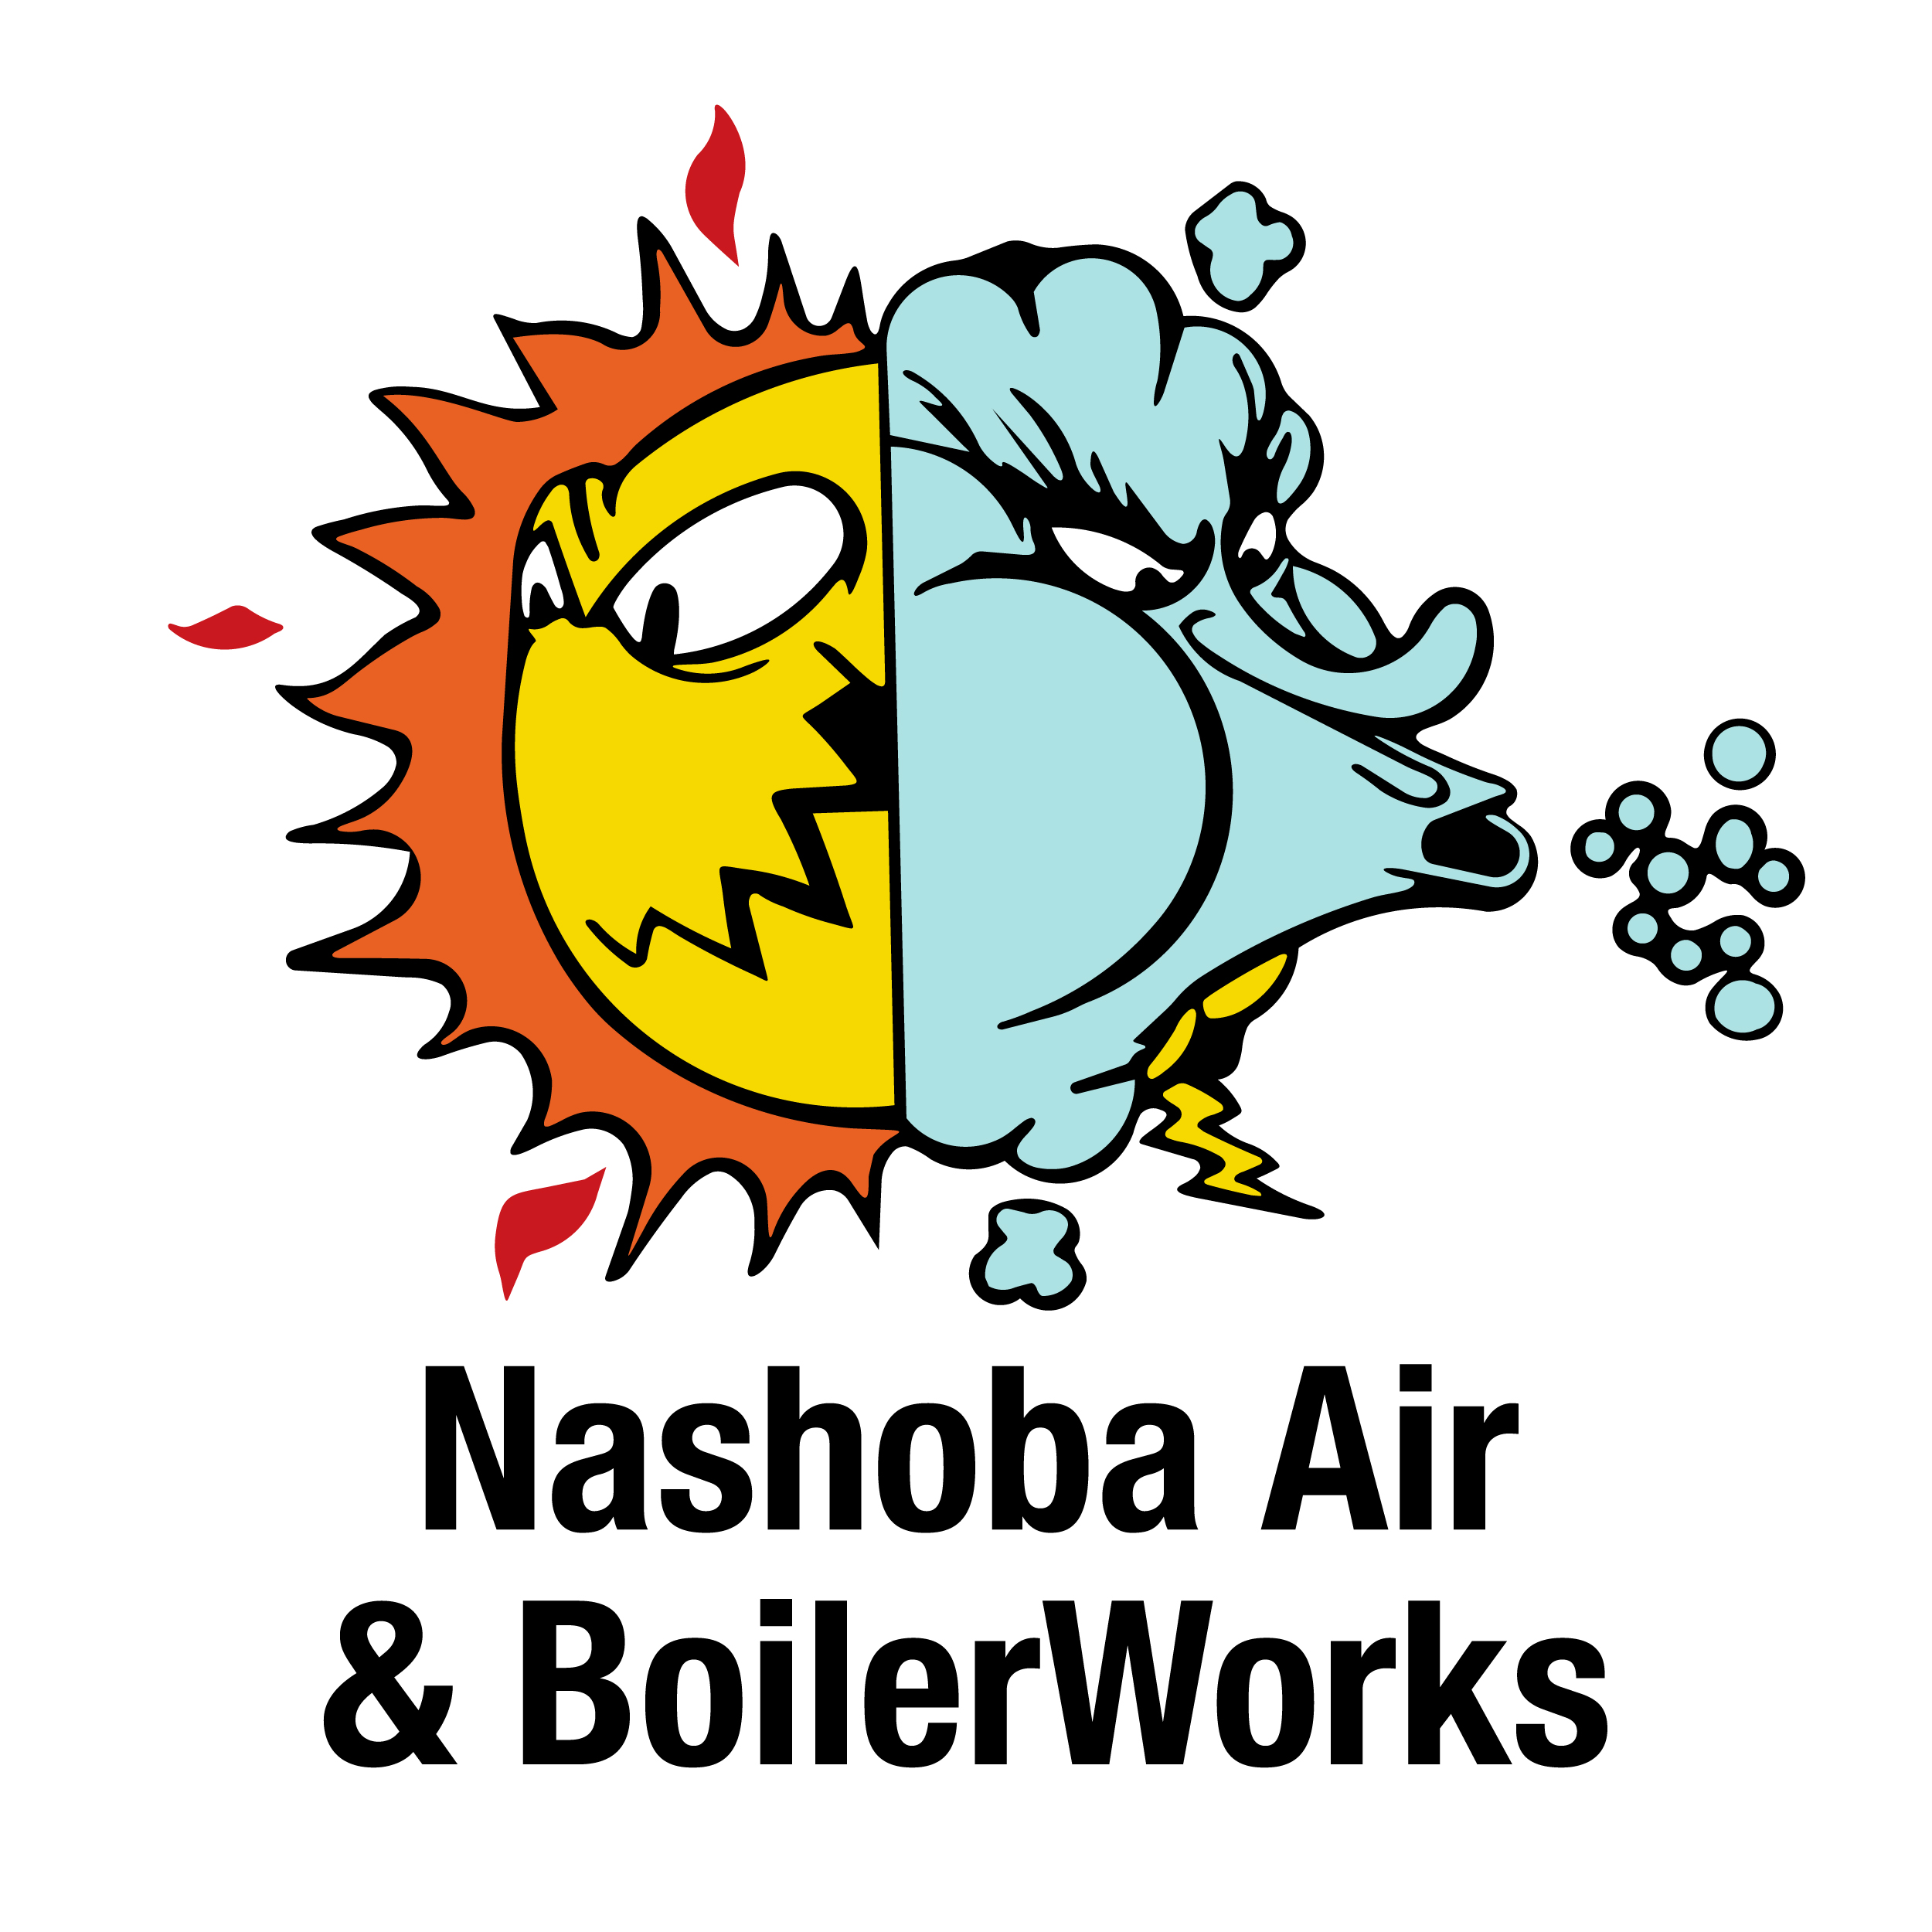 Nashoba Air & BoilerWorks